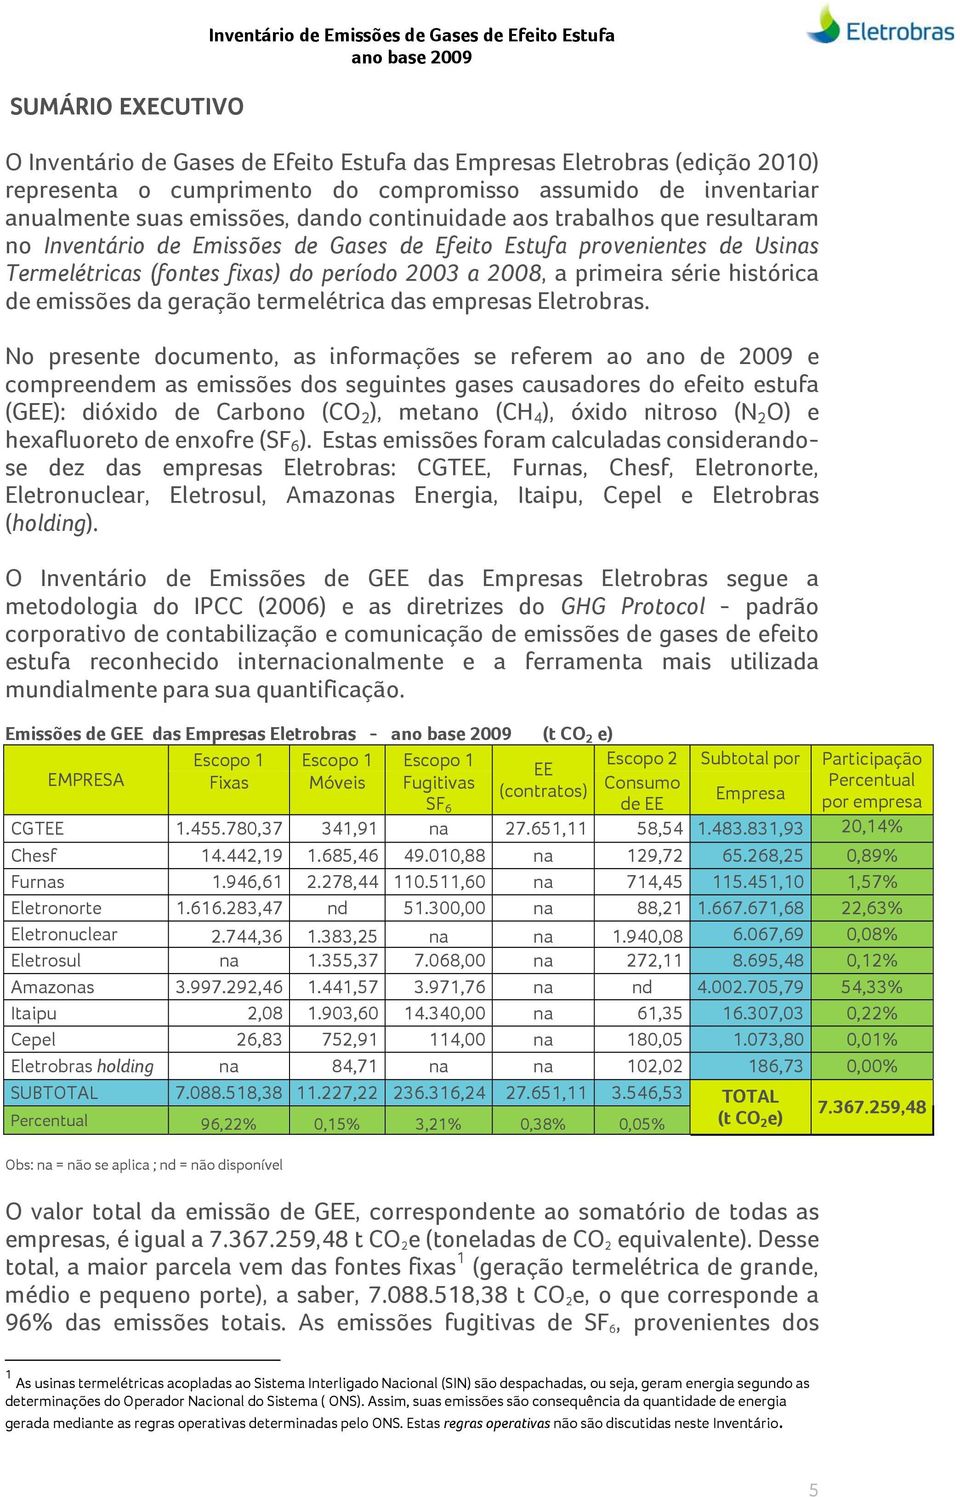 período 2003 a 2008, a primeira série histórica de emissões da geração termelétrica das empresas Eletrobras.